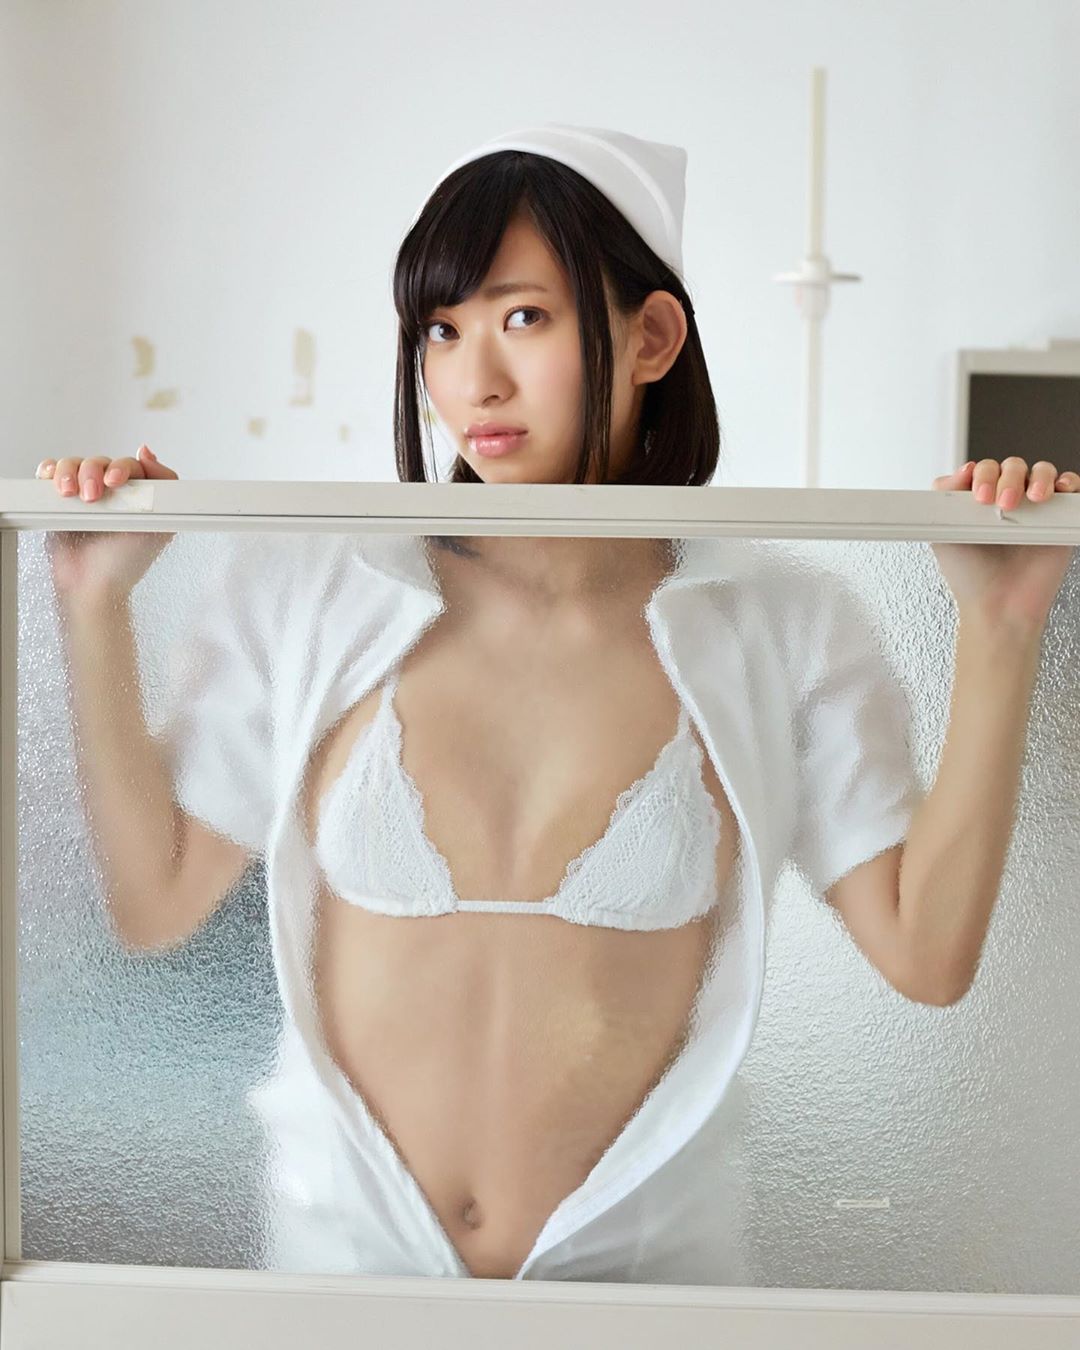 yuka kuramoti Master butt Hot model IG Instagram Facebook.